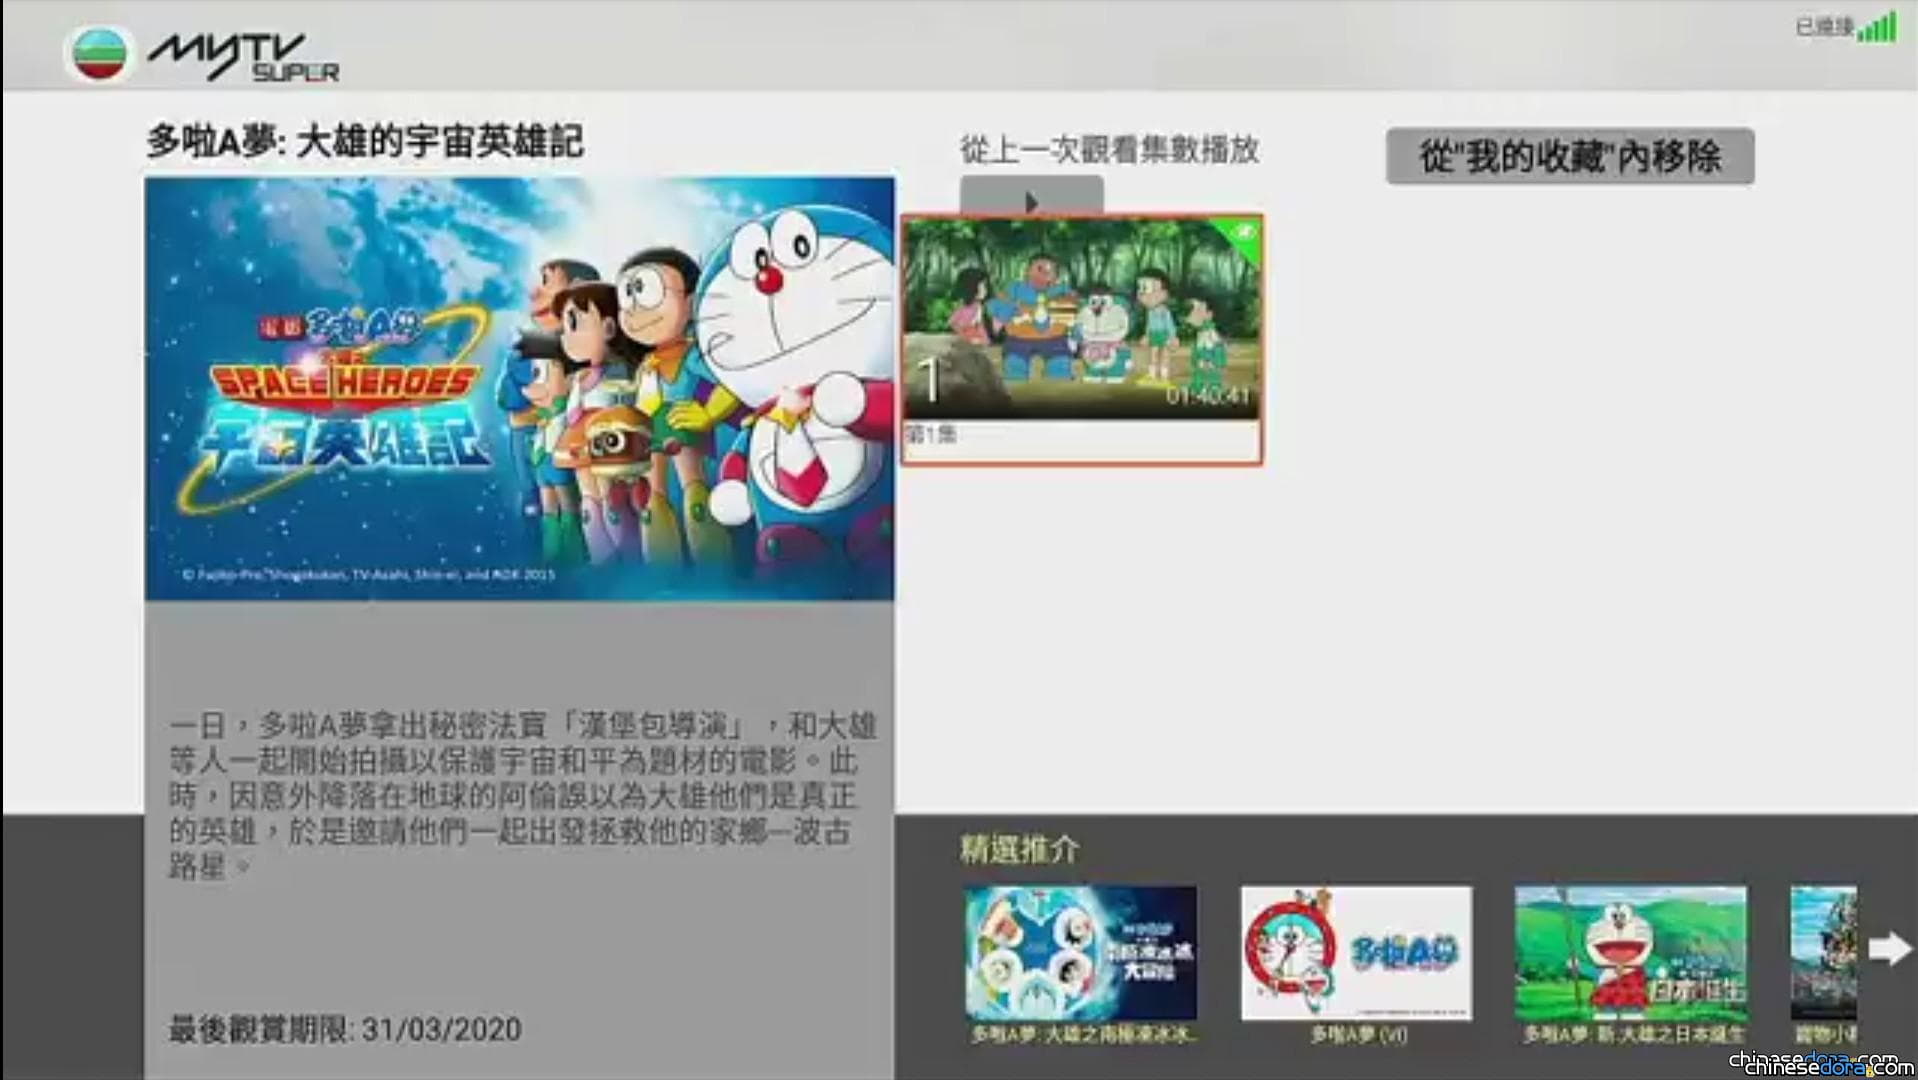 [香港] 《大雄之宇宙英雄記》3 月末從myTVSUPER免費版下架!? 拆解 myTVSUPER 免費版影片上架規律